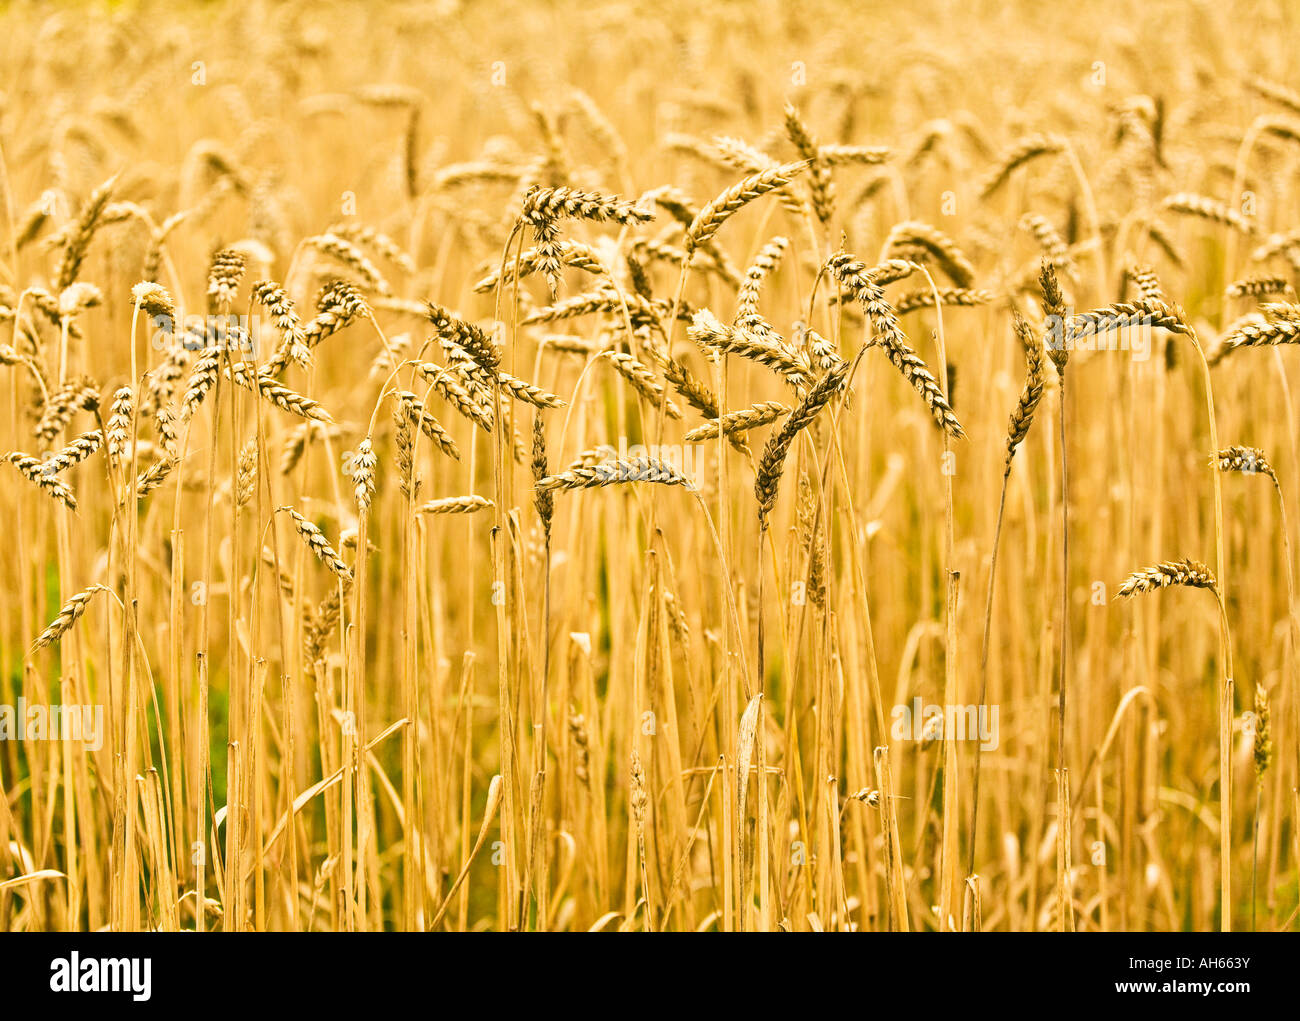 Common Wheat Stock Photo